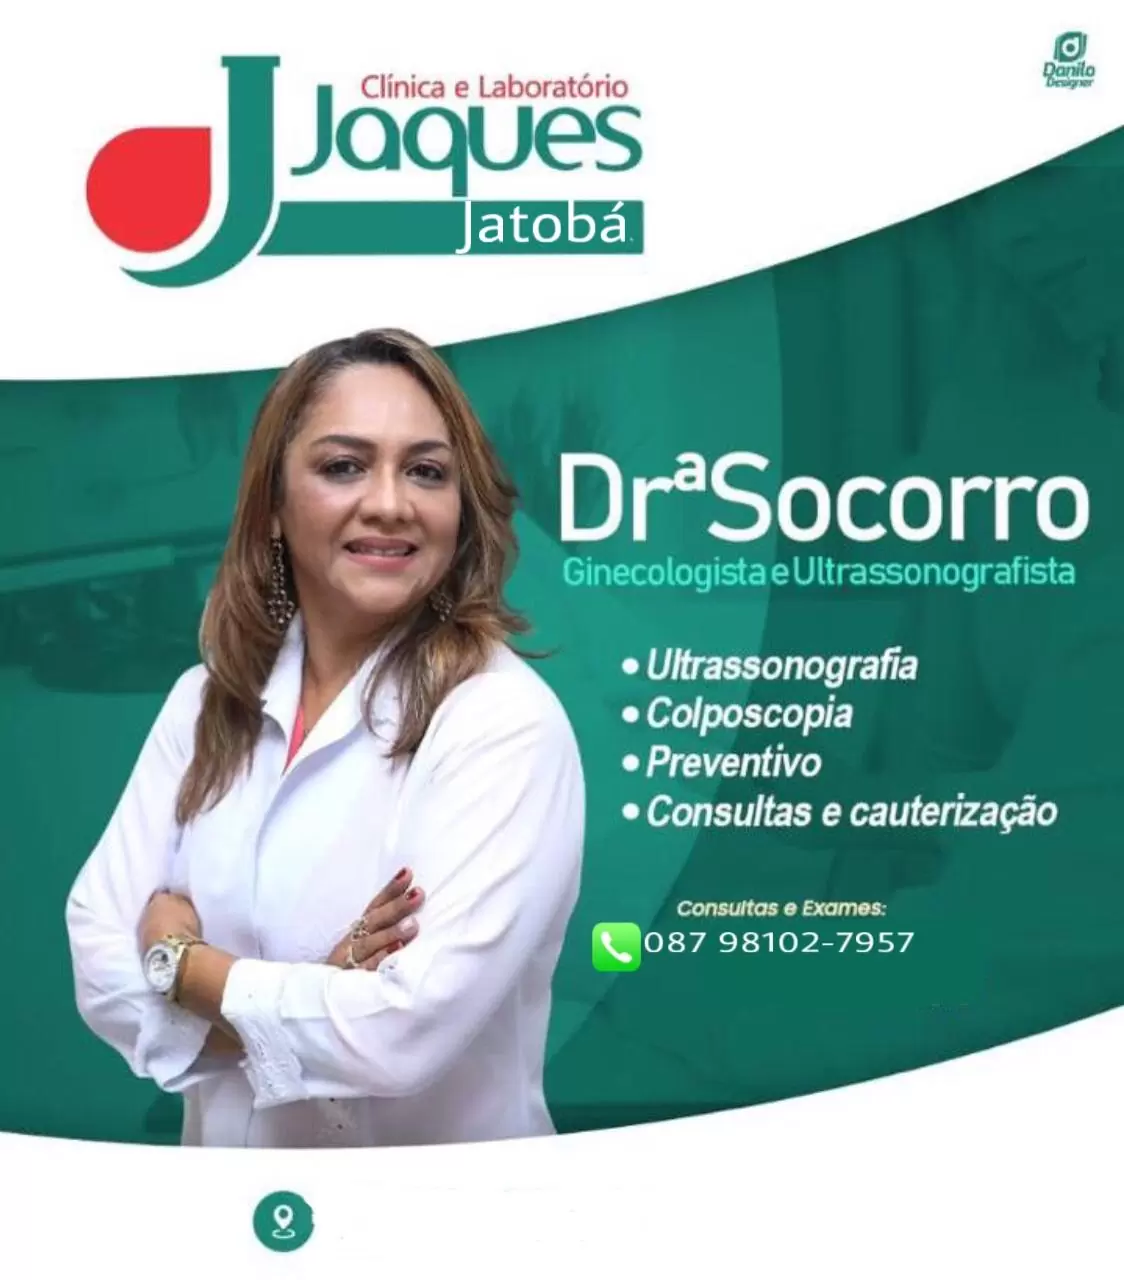 Jatobá: Drª Socorro Realizará Consultas Em Ginecologia E Ultrassonografia Nesta Quinta-Feira (17/12) Na Clínica E Laboratório Jaques